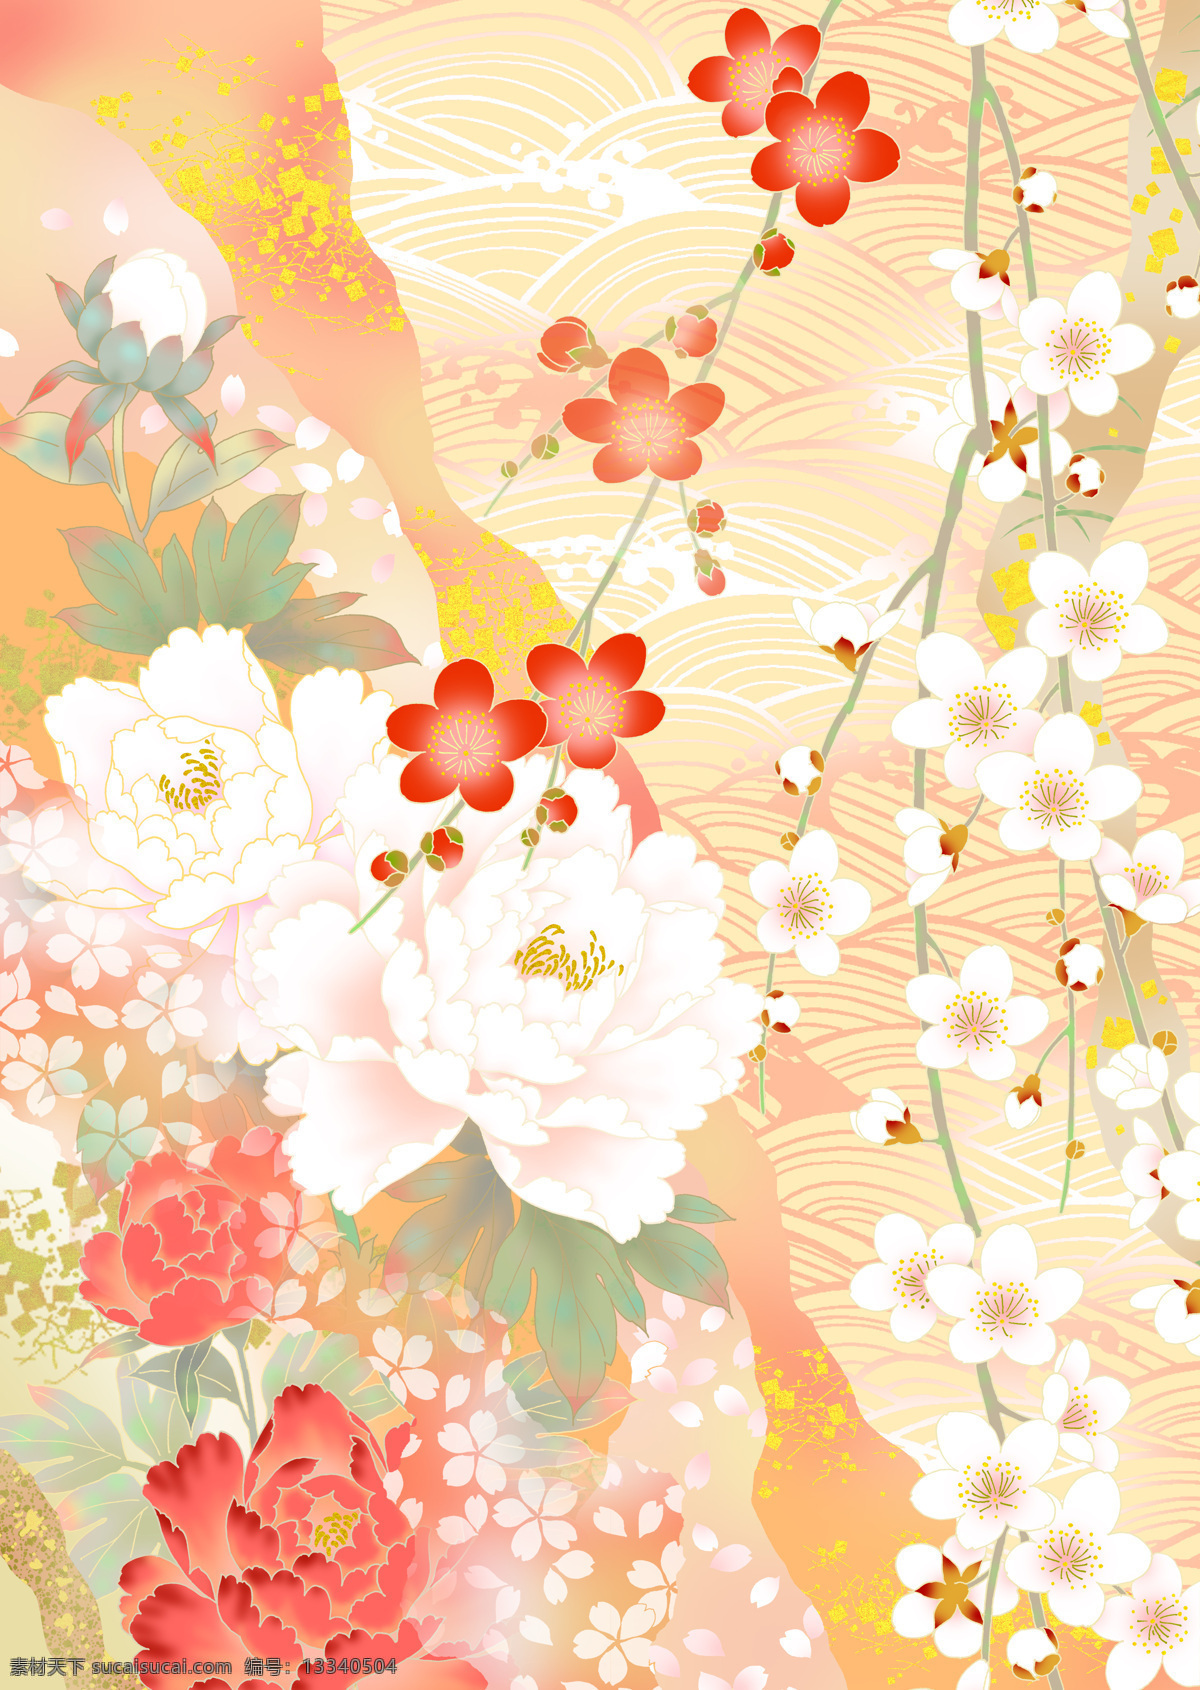 日本 风格 中 色彩 背景图片 黄色 梅花 牡丹花 水纹 樱花 红色梅花 浪漫色彩 底纹边框